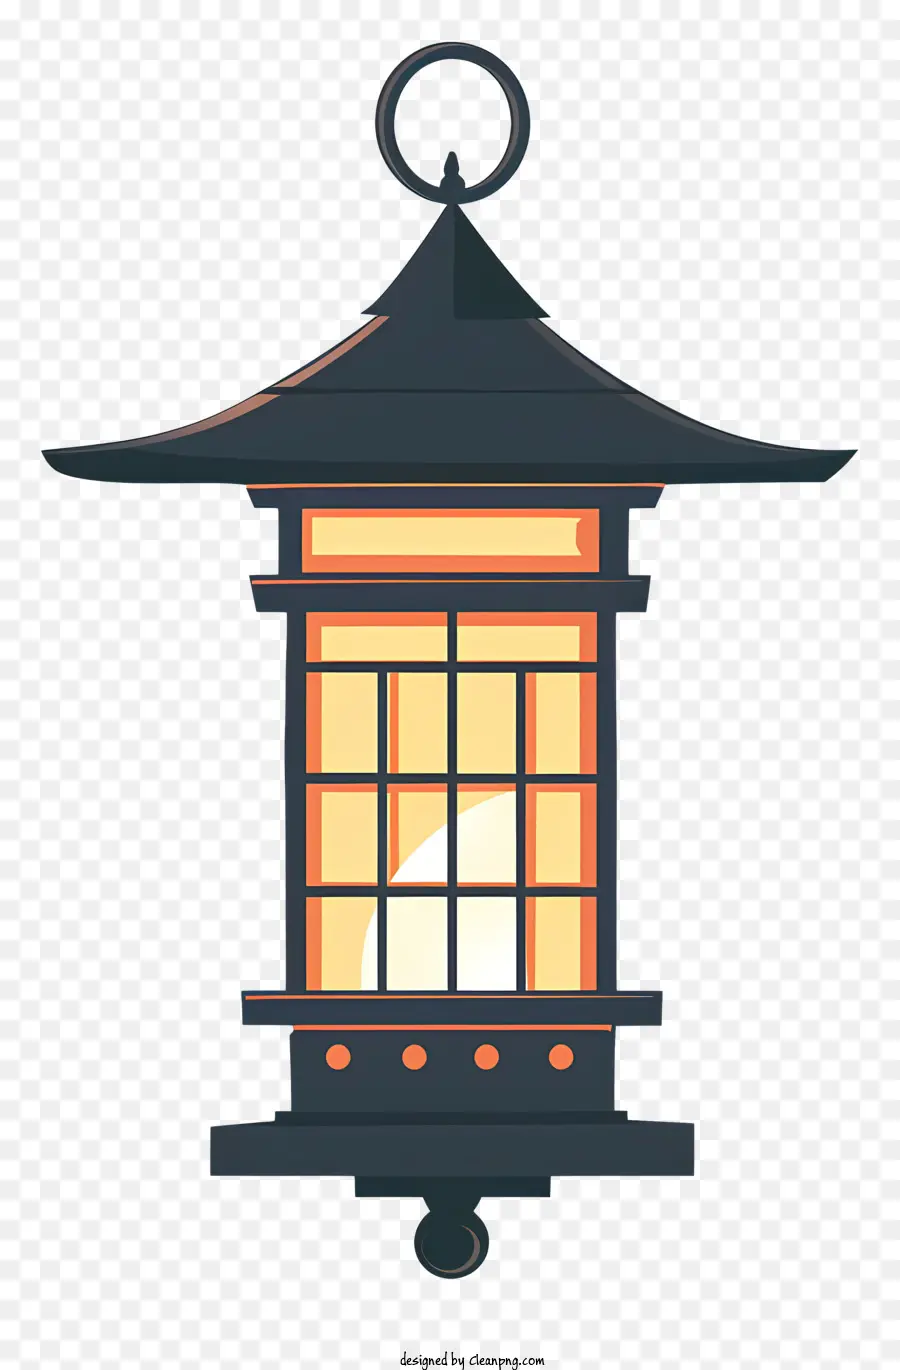 metal lantern traditional japanese lantern ornate carvings curved roof lantern warm yellow glow